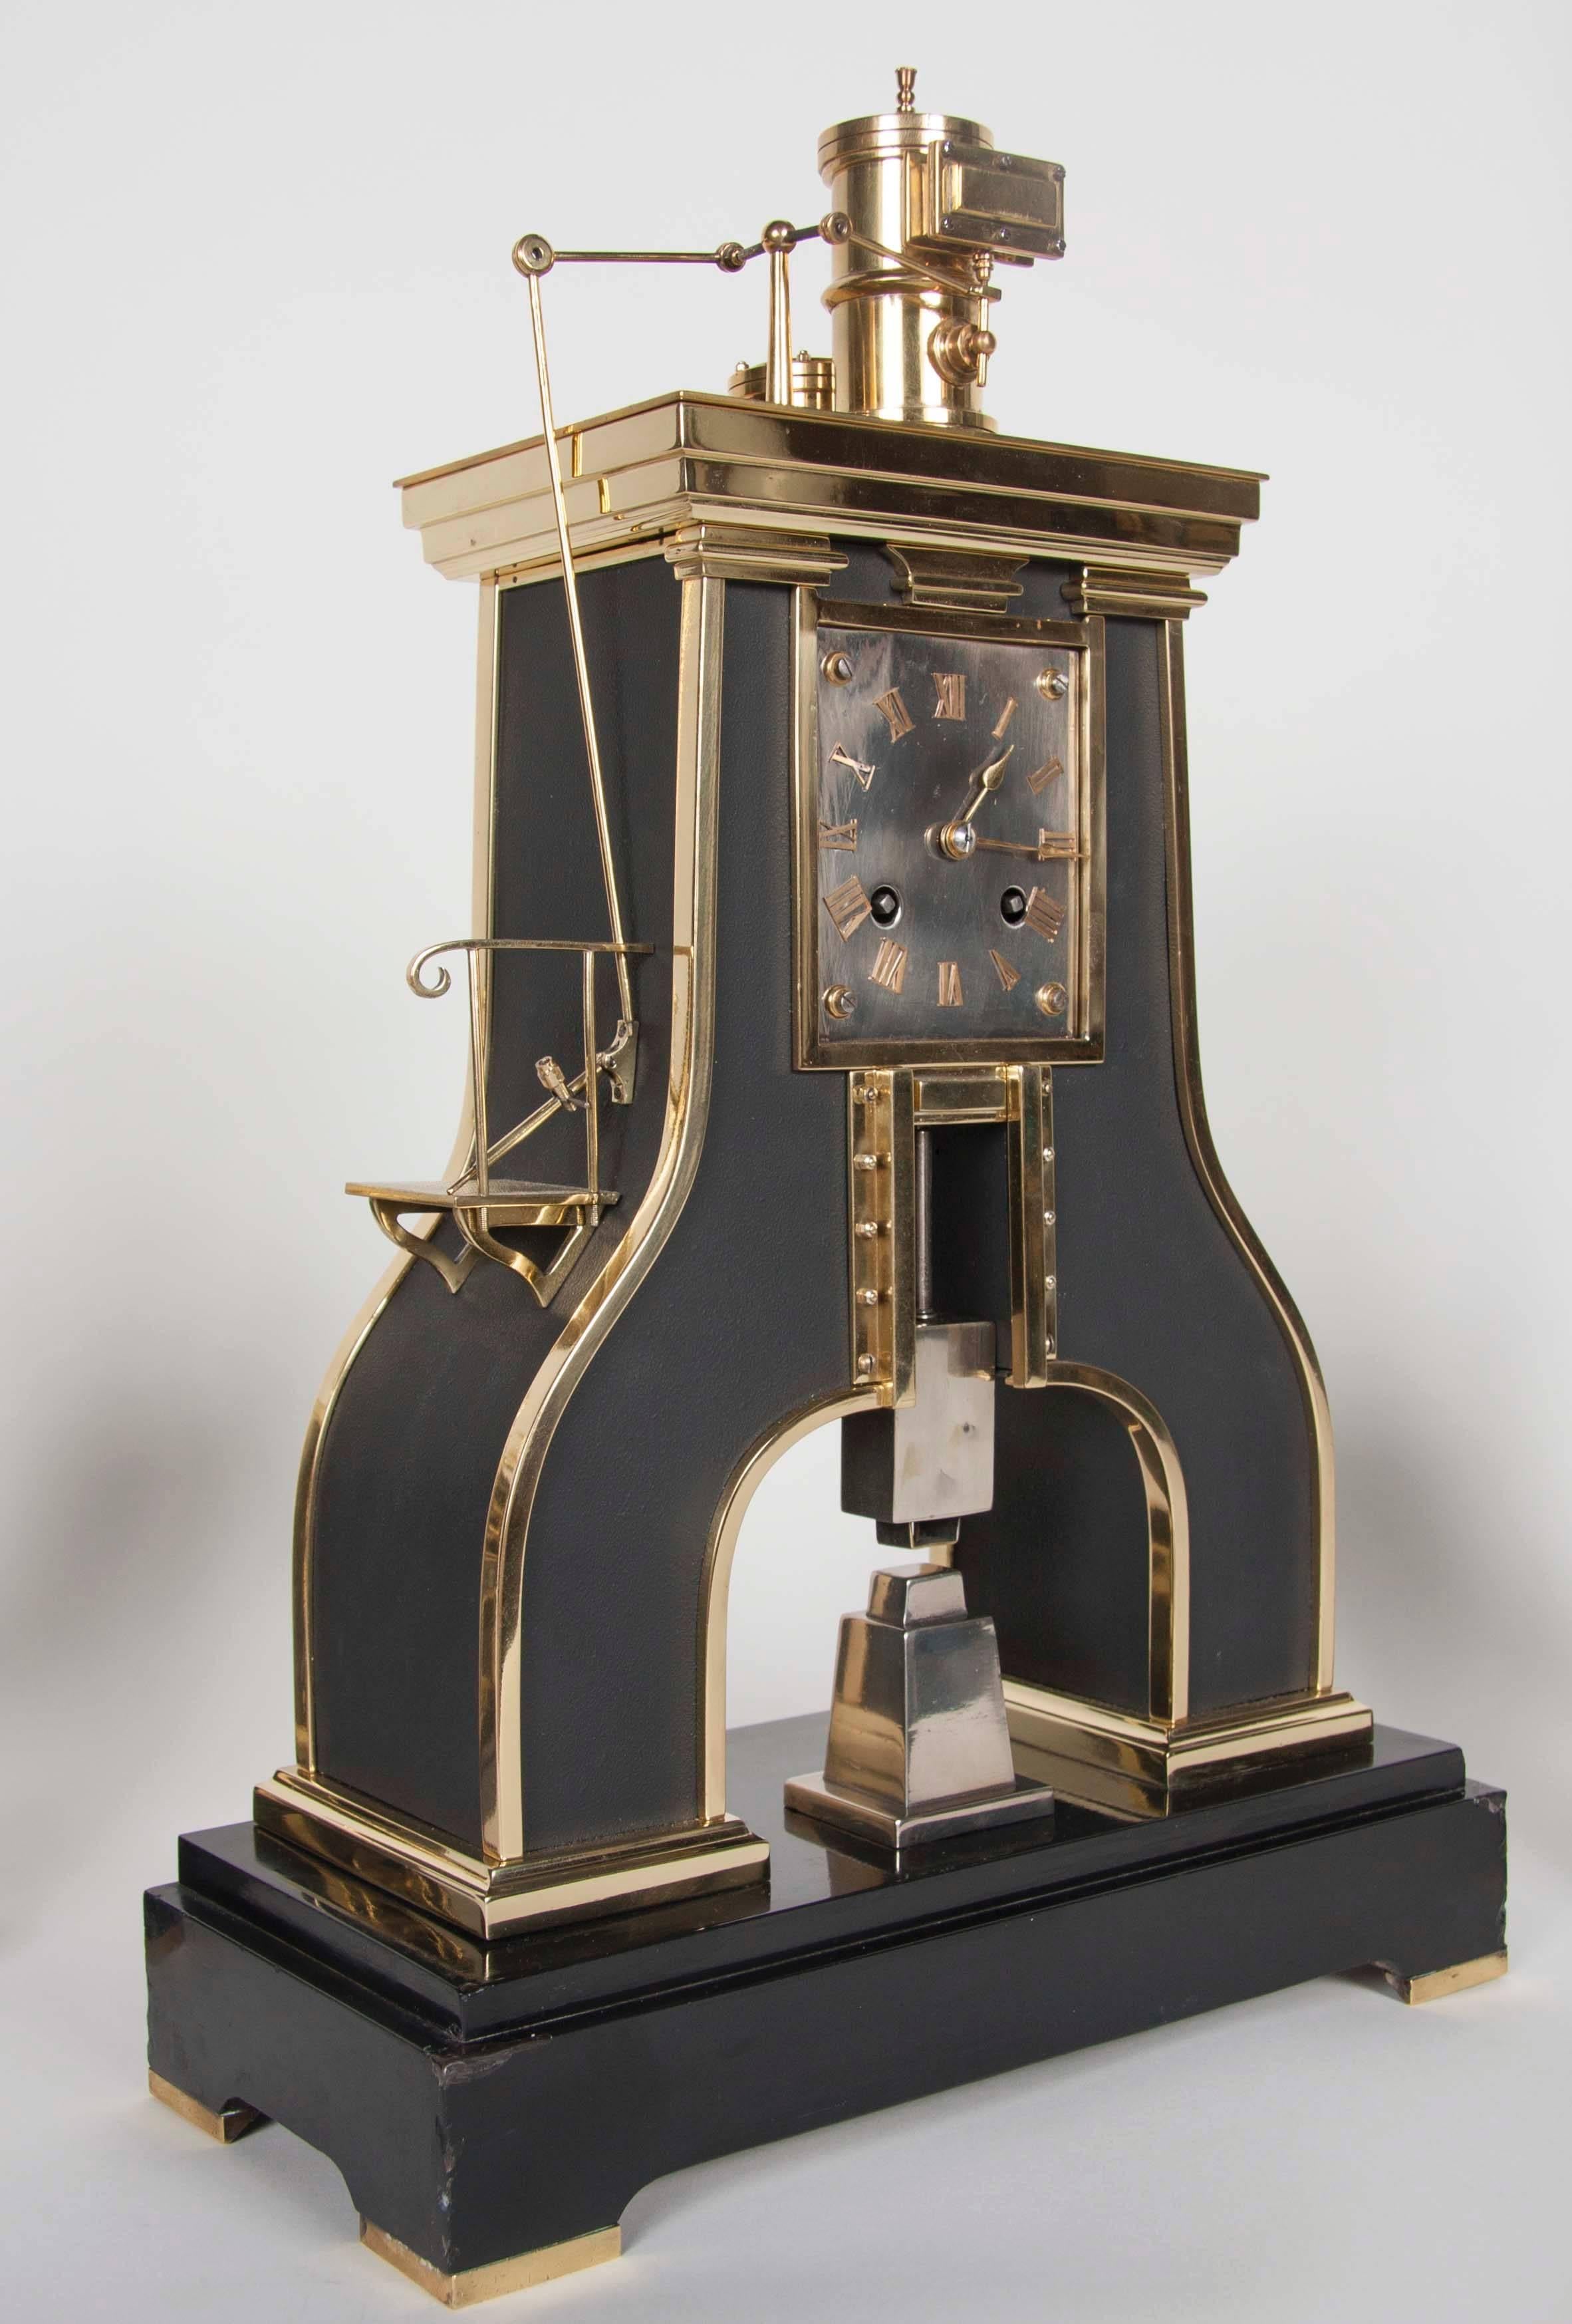 Ein hübsches französisches Uhrenset aus dem 19. Jahrhundert, bestehend aus einer Uhr und einem passenden Paar Kandelaber. Französischer Industrie-Dampfhammer mit Messingwerk. Signiert GLT Paris Japy Freres.
              